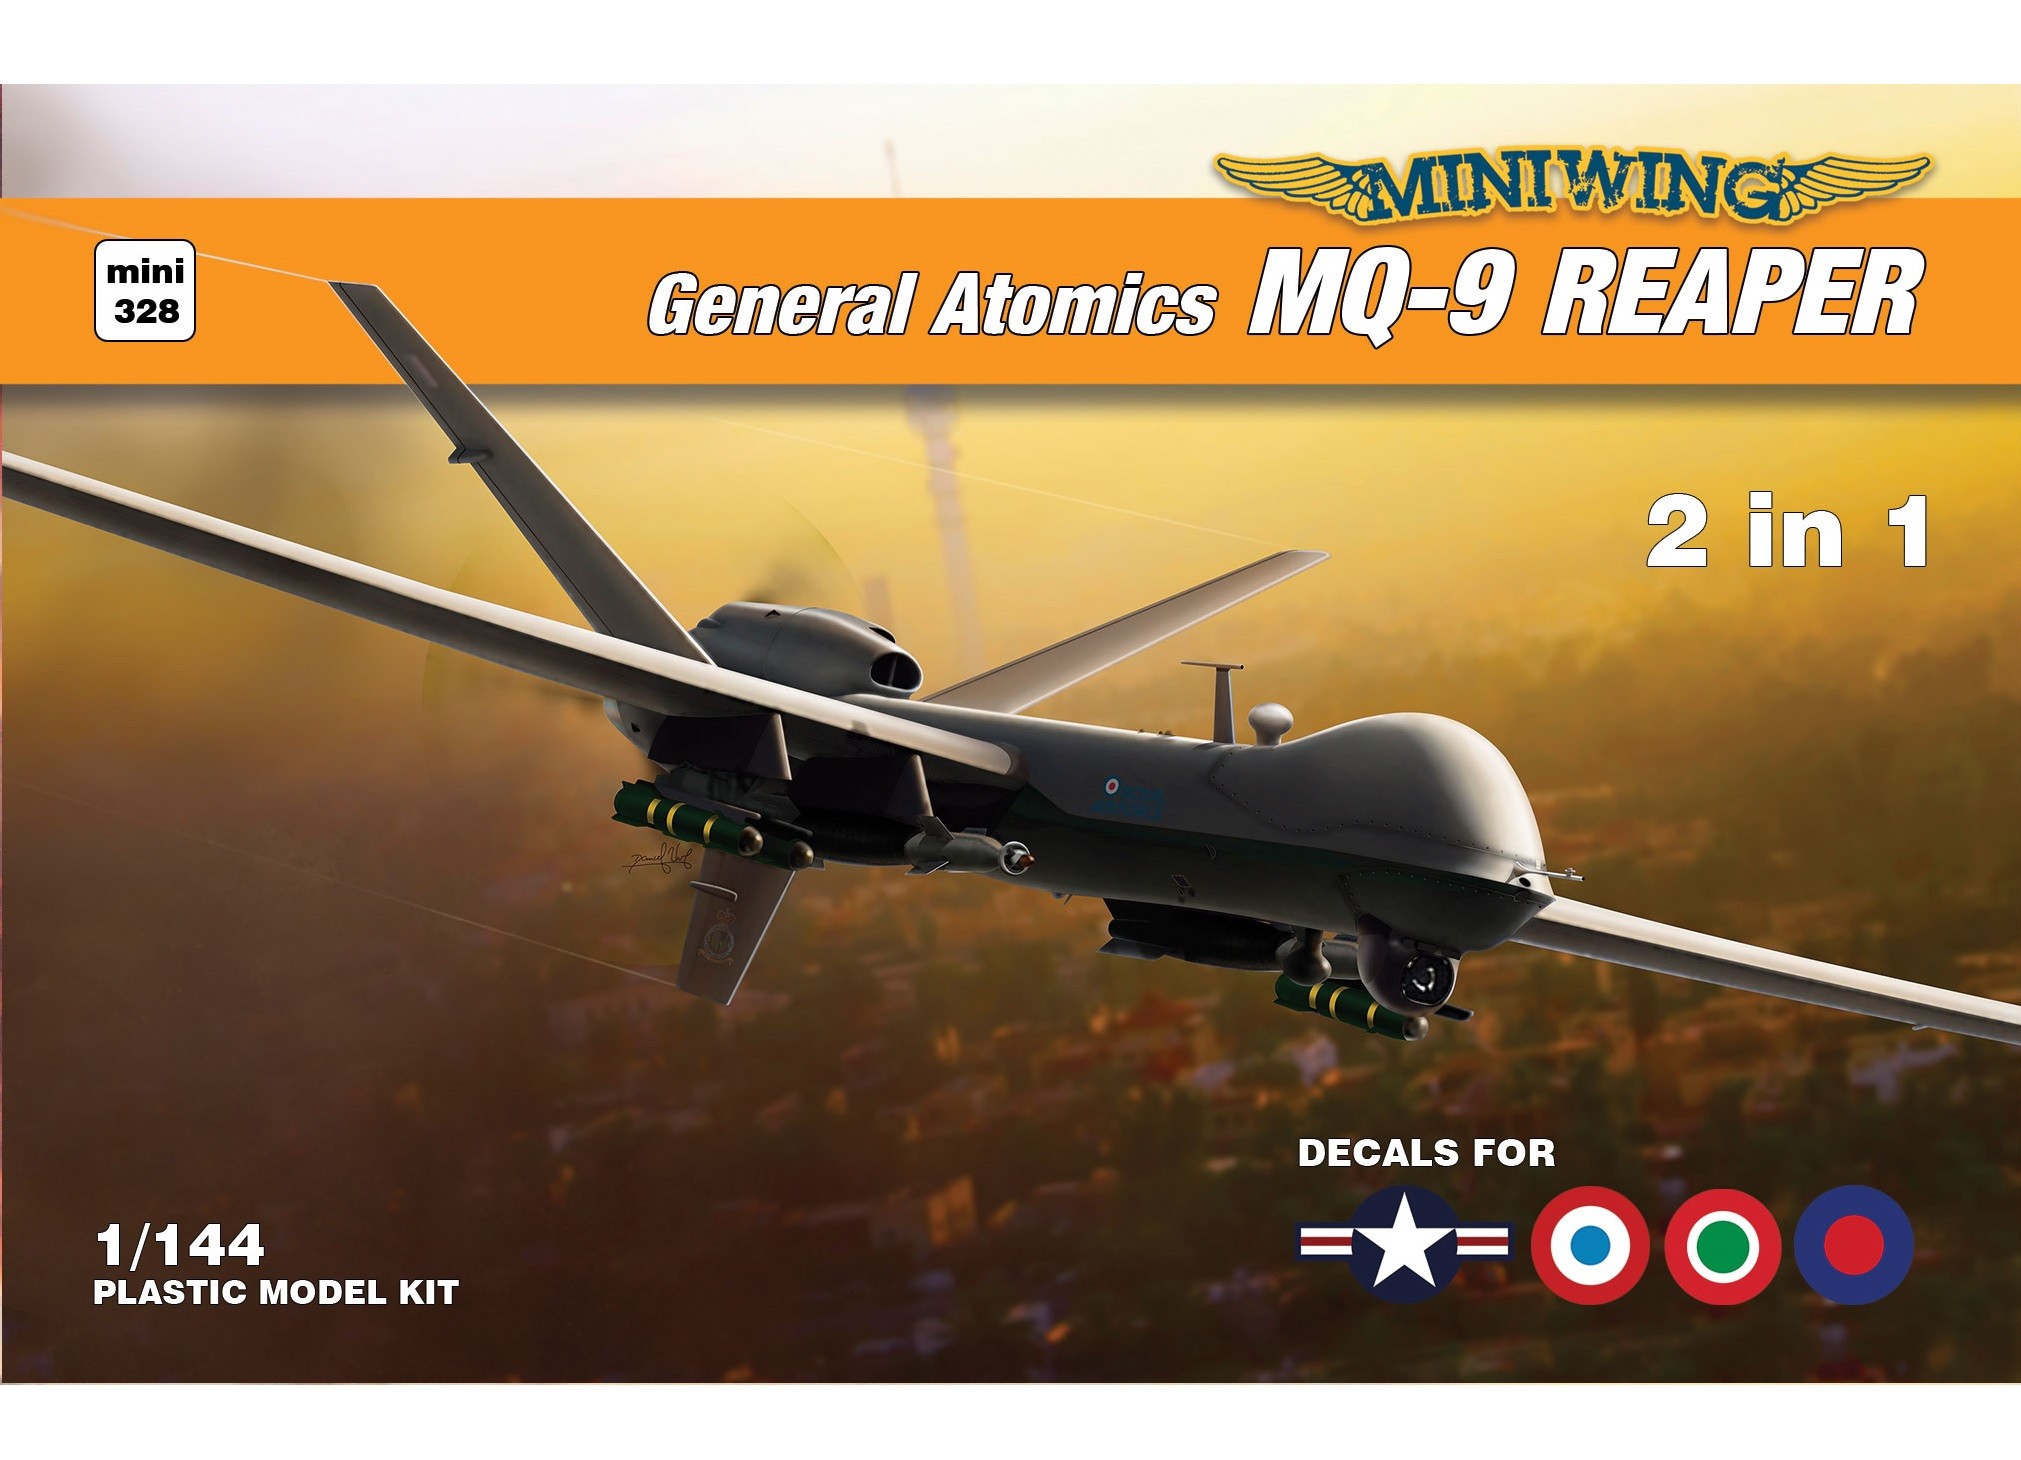 Maquette Miniwings General Atomics MQ-9 Reaper. Décalques pour RAF, Fr